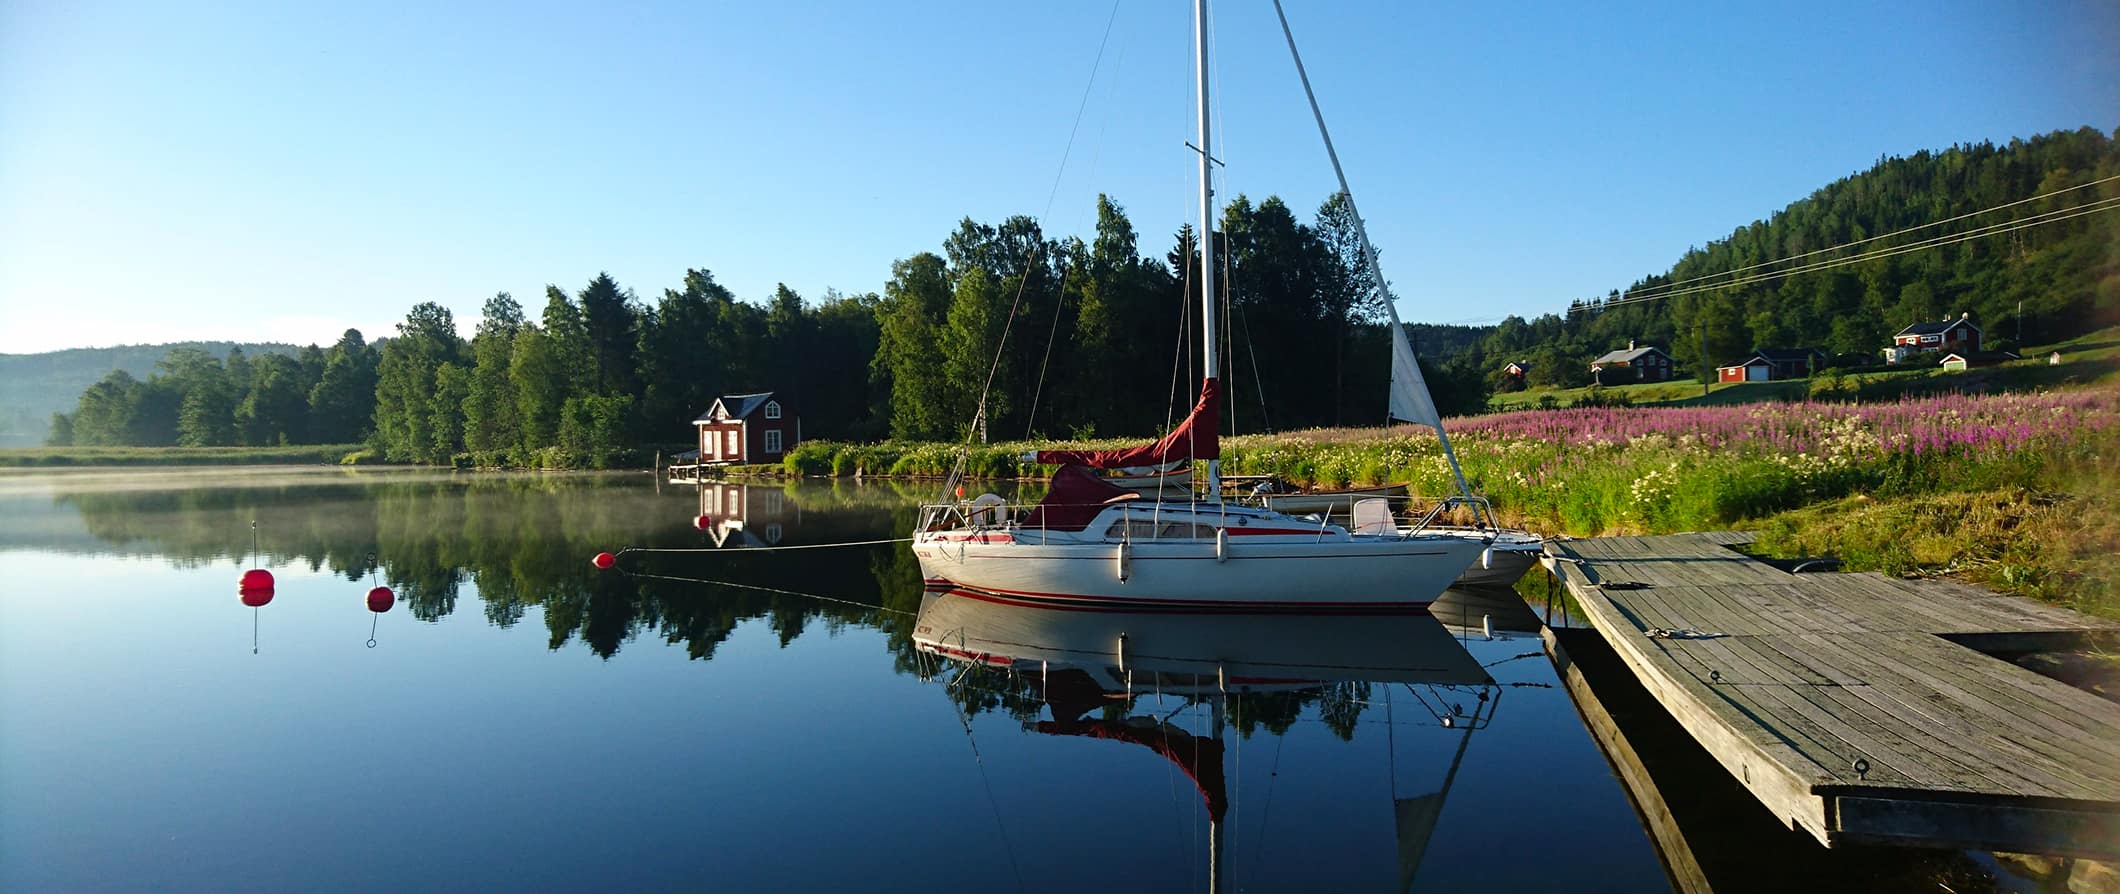 Paisagem serena à beira do lago na Suécia